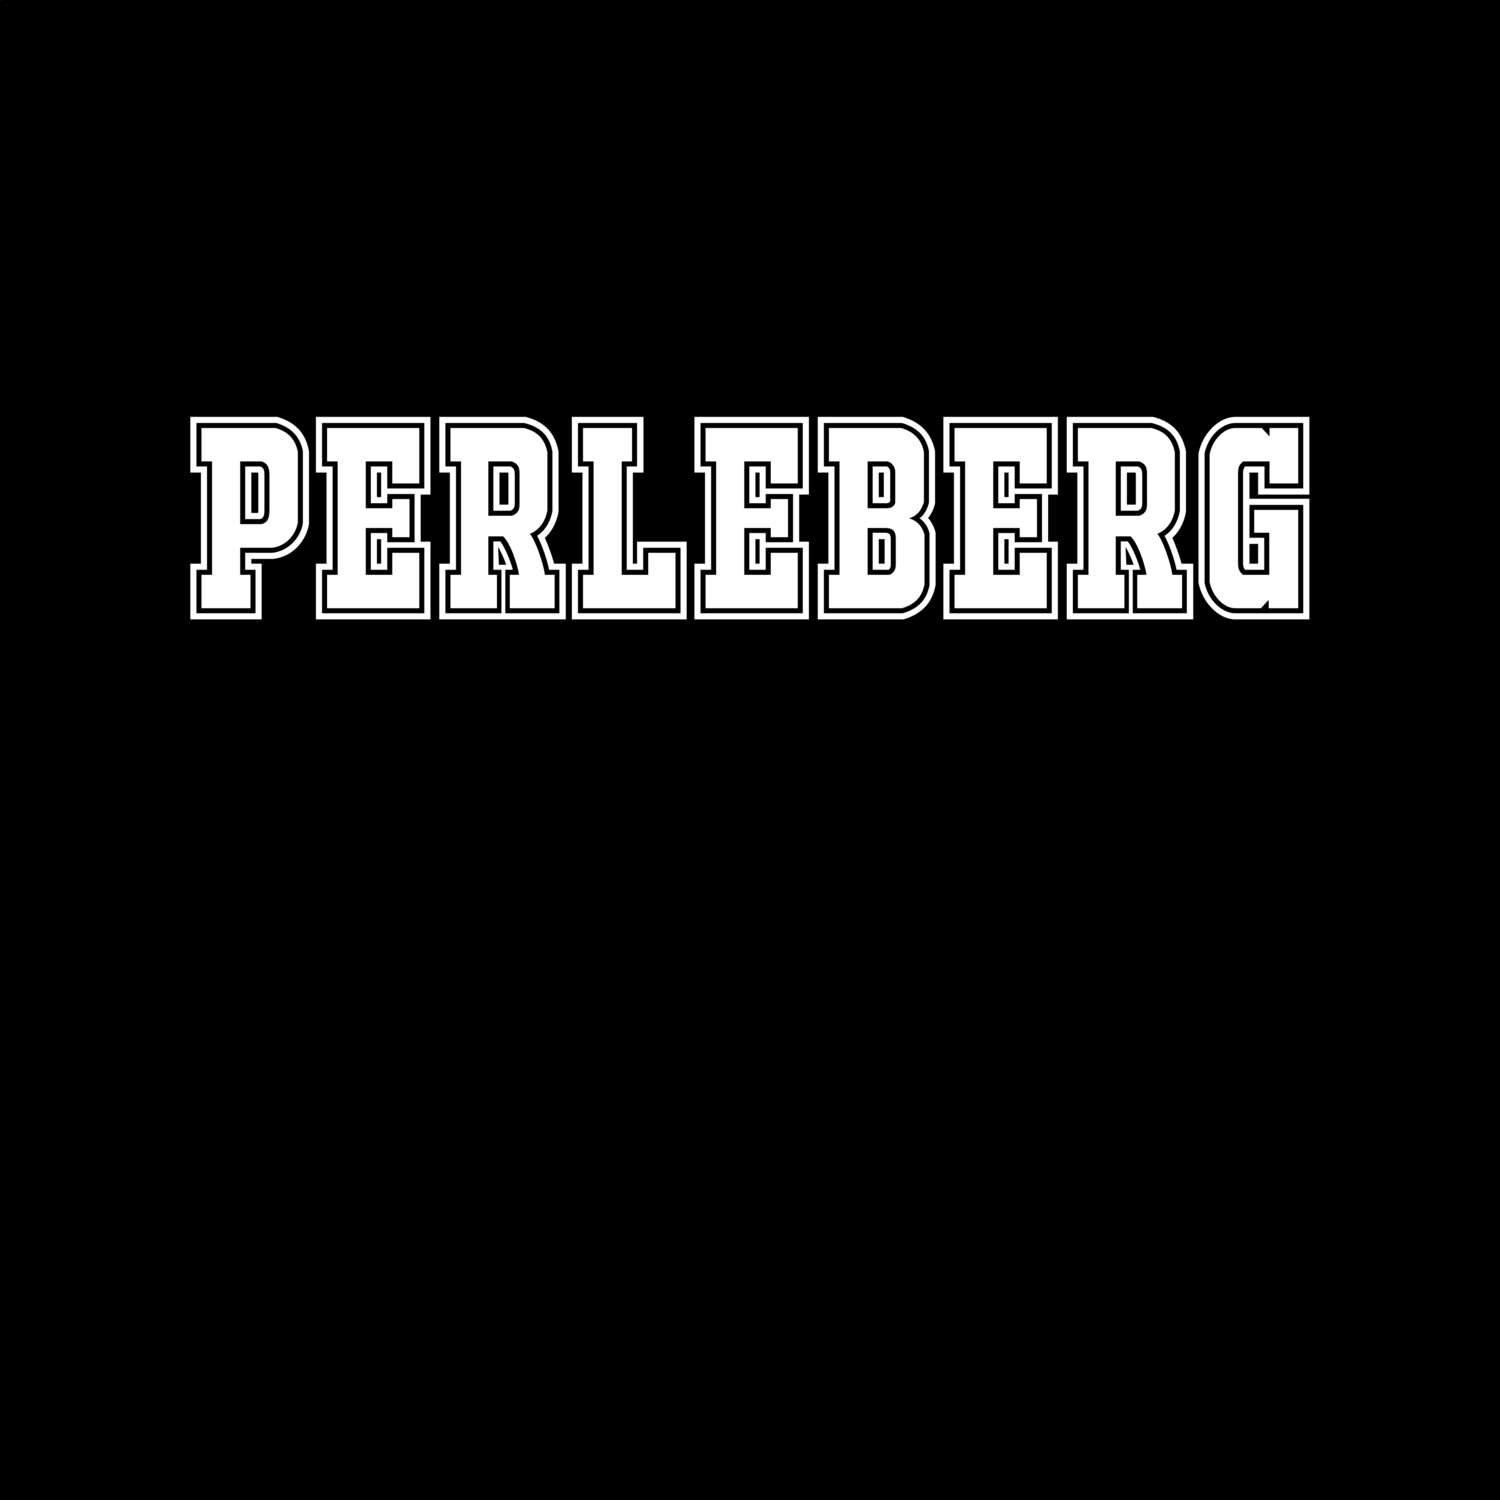 Perleberg T-Shirt »Classic«